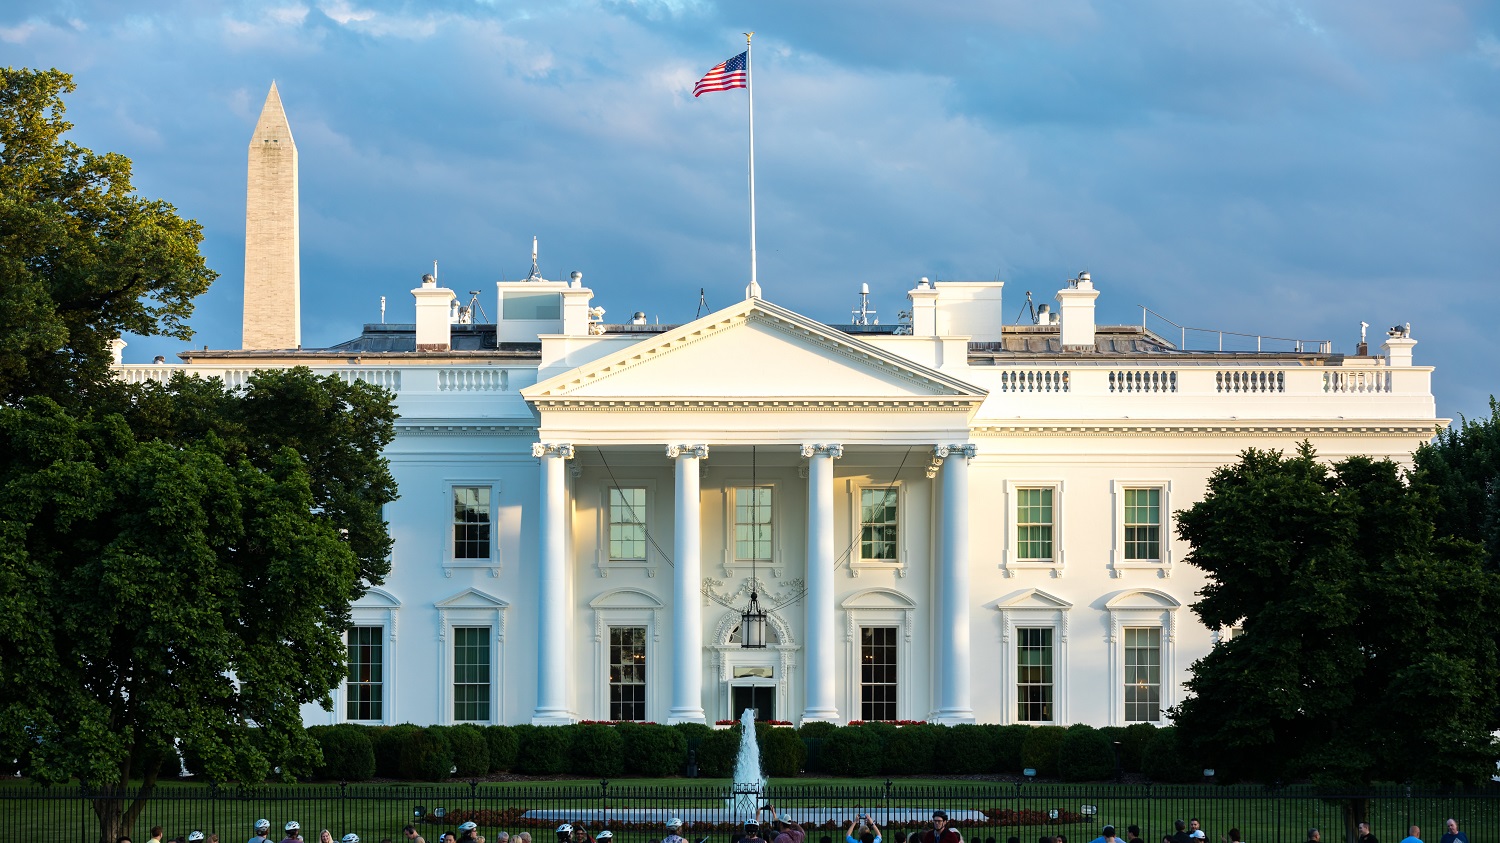 Image of White House facade